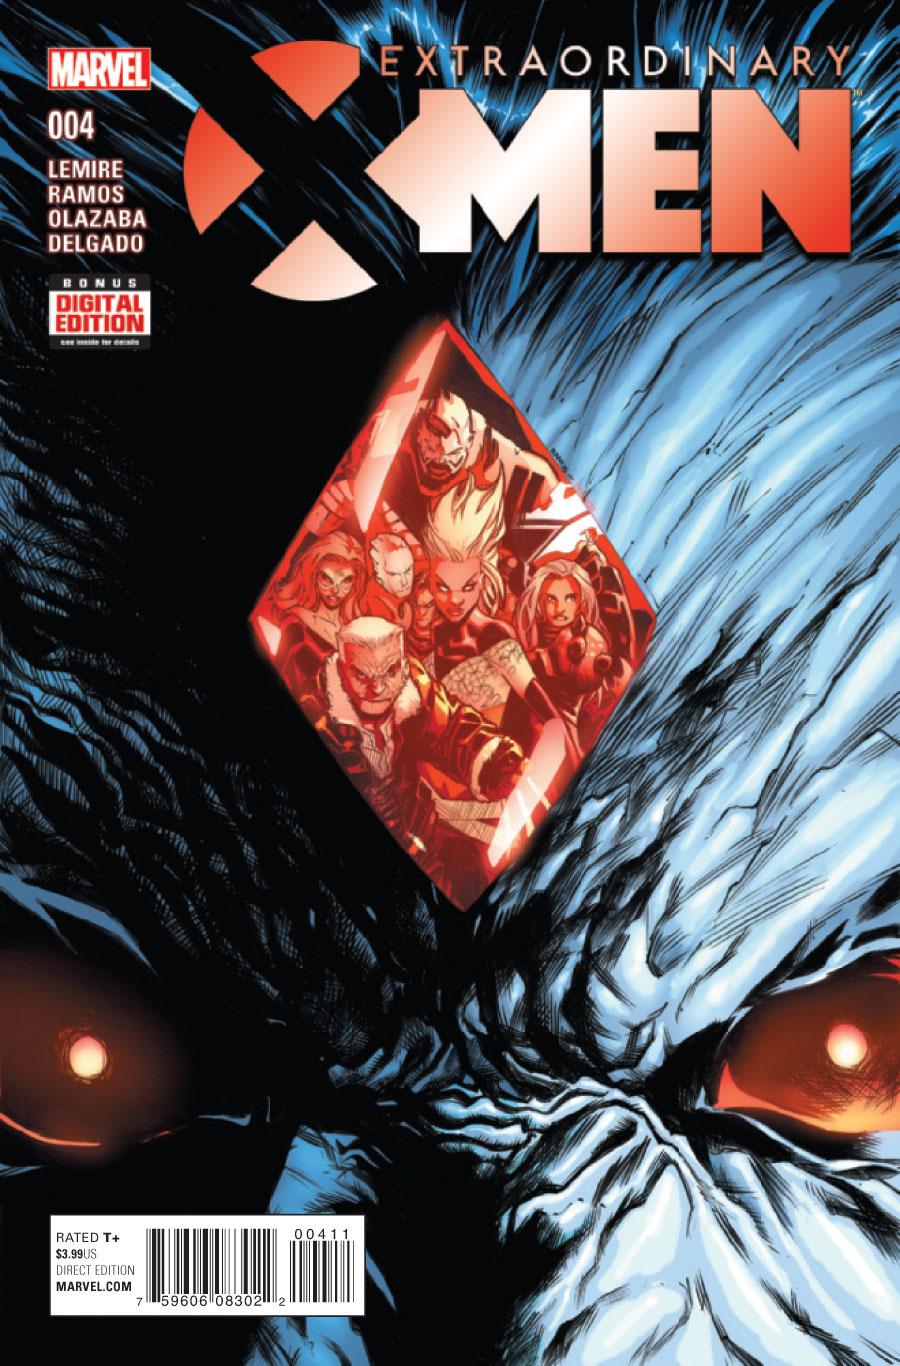 Extraordinary X-Men Vol. 1 #4